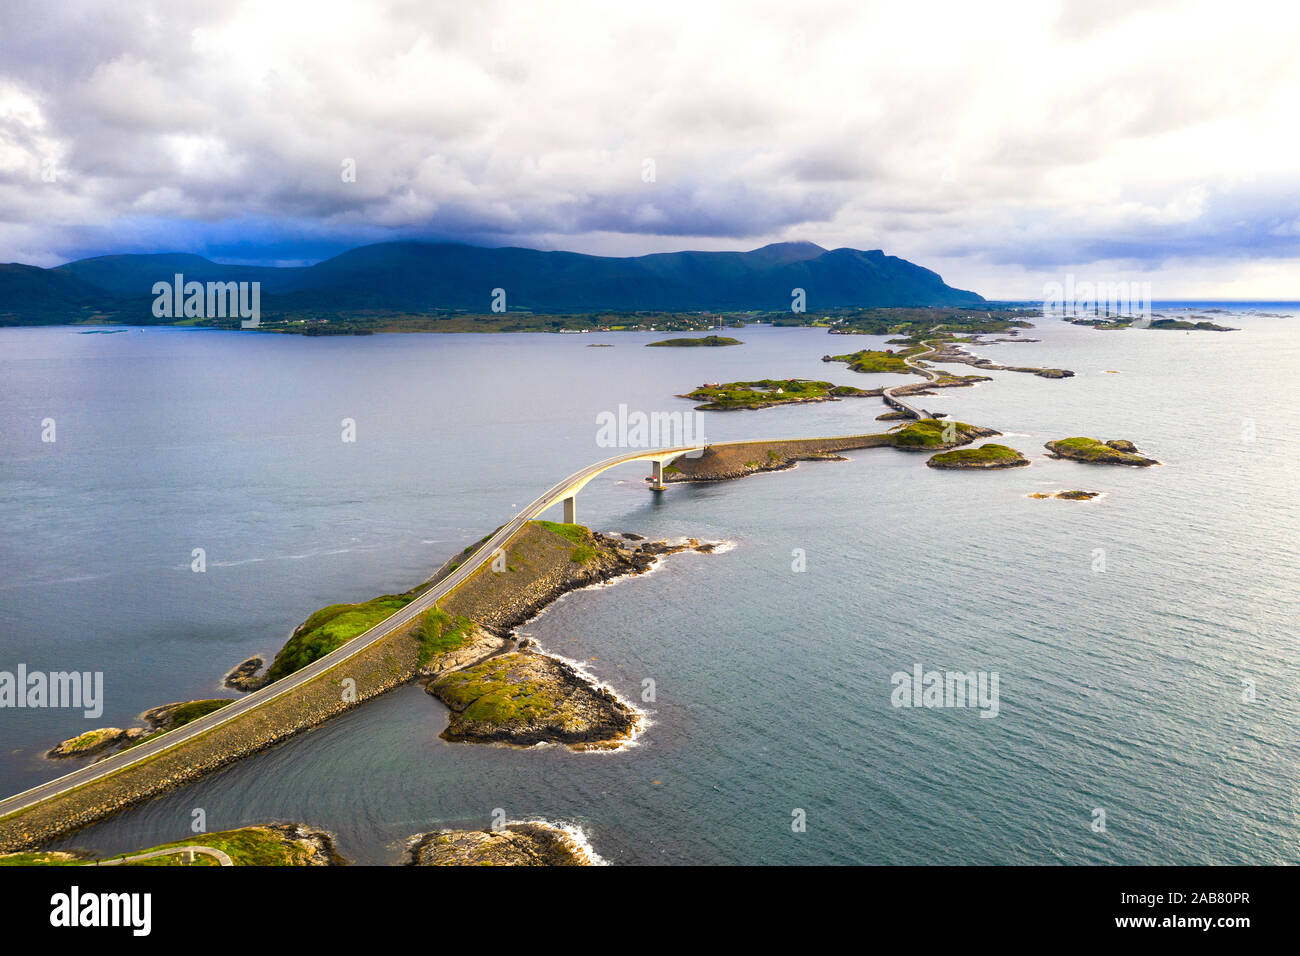 Vue aérienne du pont de Storseisundet entouré par la mer et d'îlots, Atlantic Road, More og Romsdal County, Norway, Scandinavia, Europe Banque D'Images